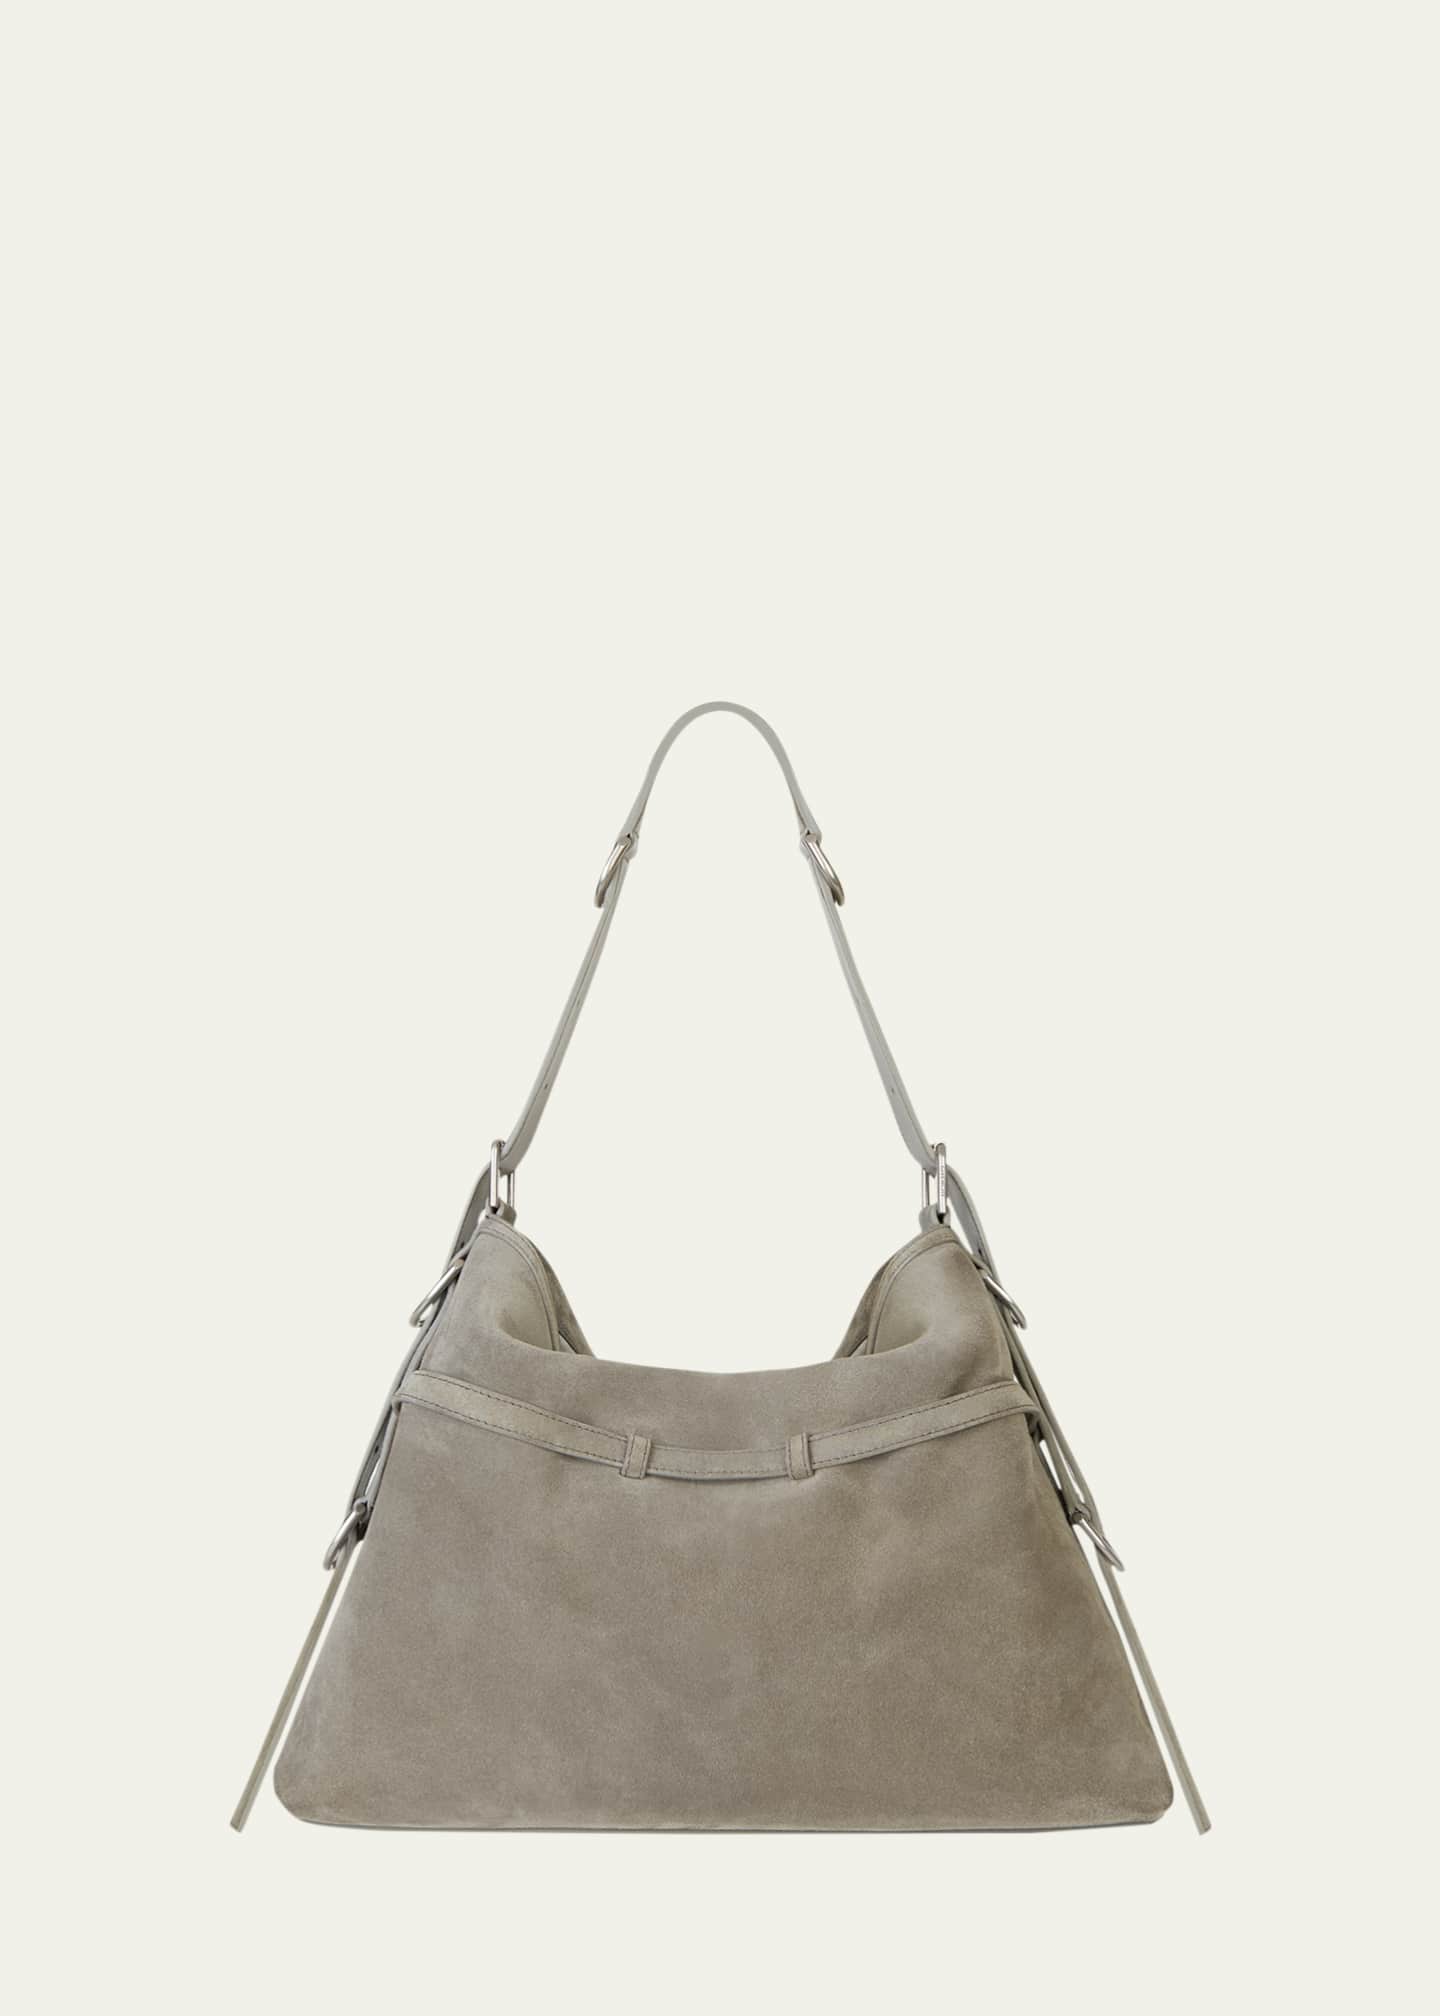 Givenchy Voyou medium grey suede bag